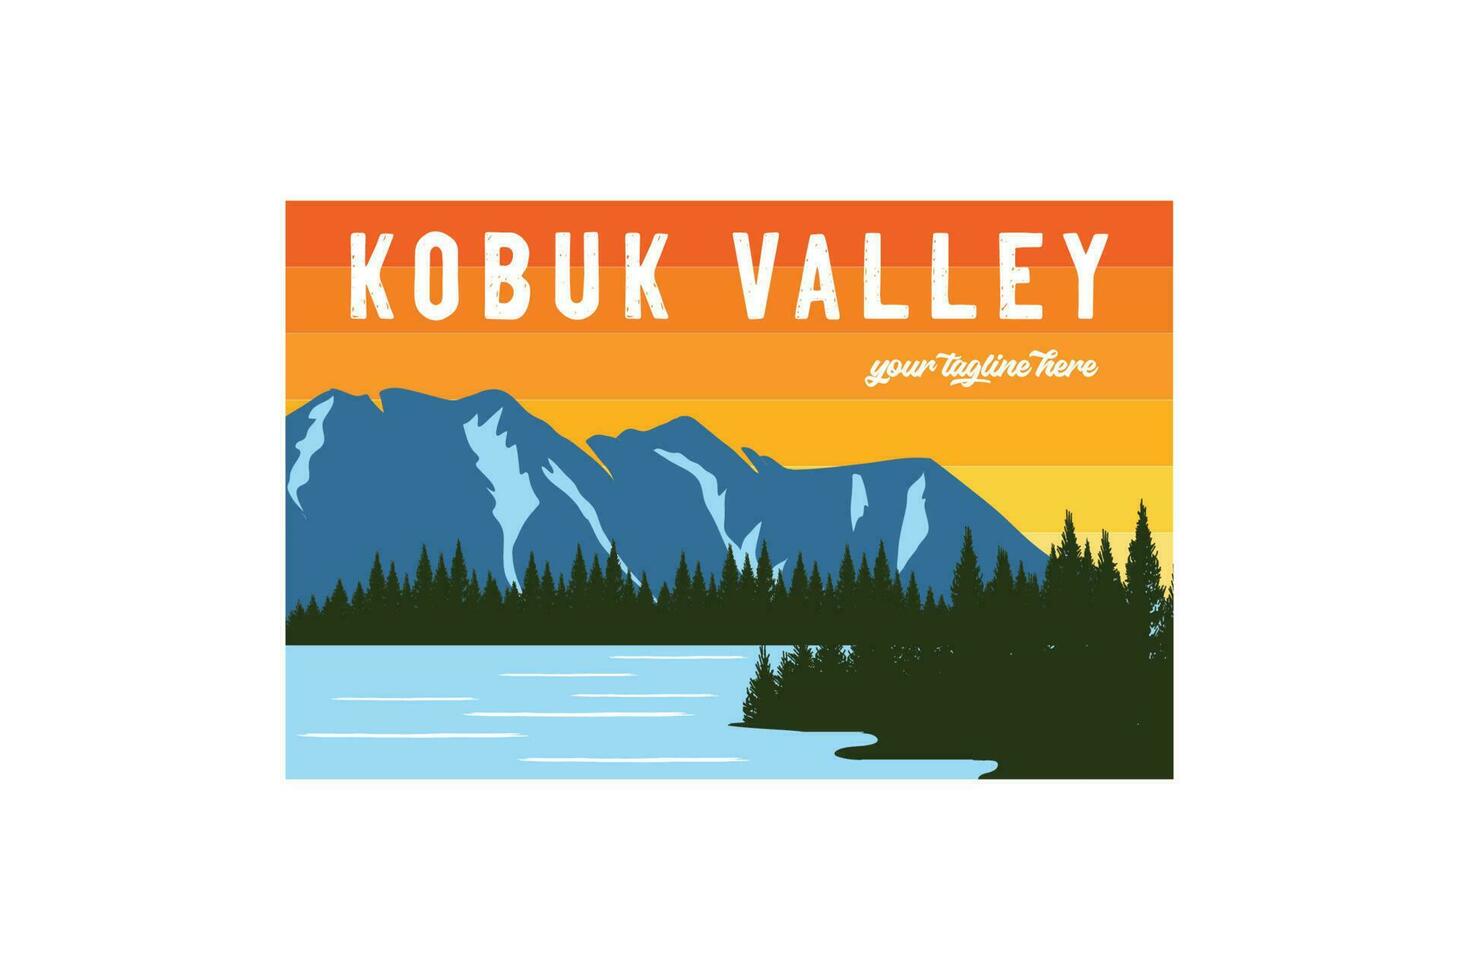 Vintage ▾ retrò americano montagna pino foresta kobuk valle fiume lago nazionale parco per all'aperto avventura t camicia logo illustrazione vettore